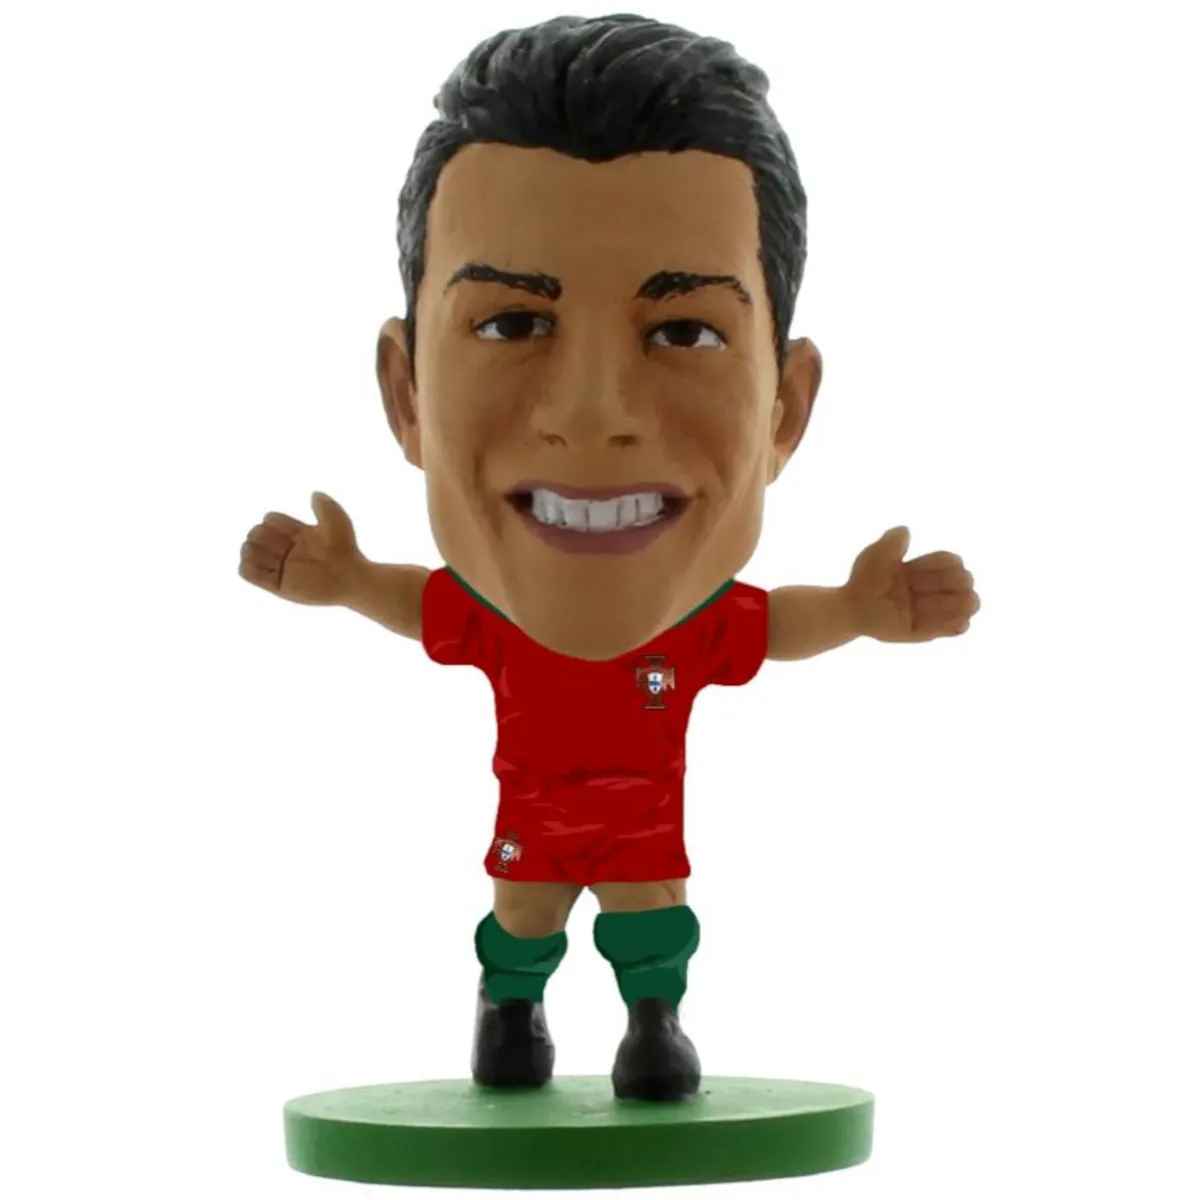 143226 Portugal SoccerStarz Collectable Figure - Cristiano Ronaldo